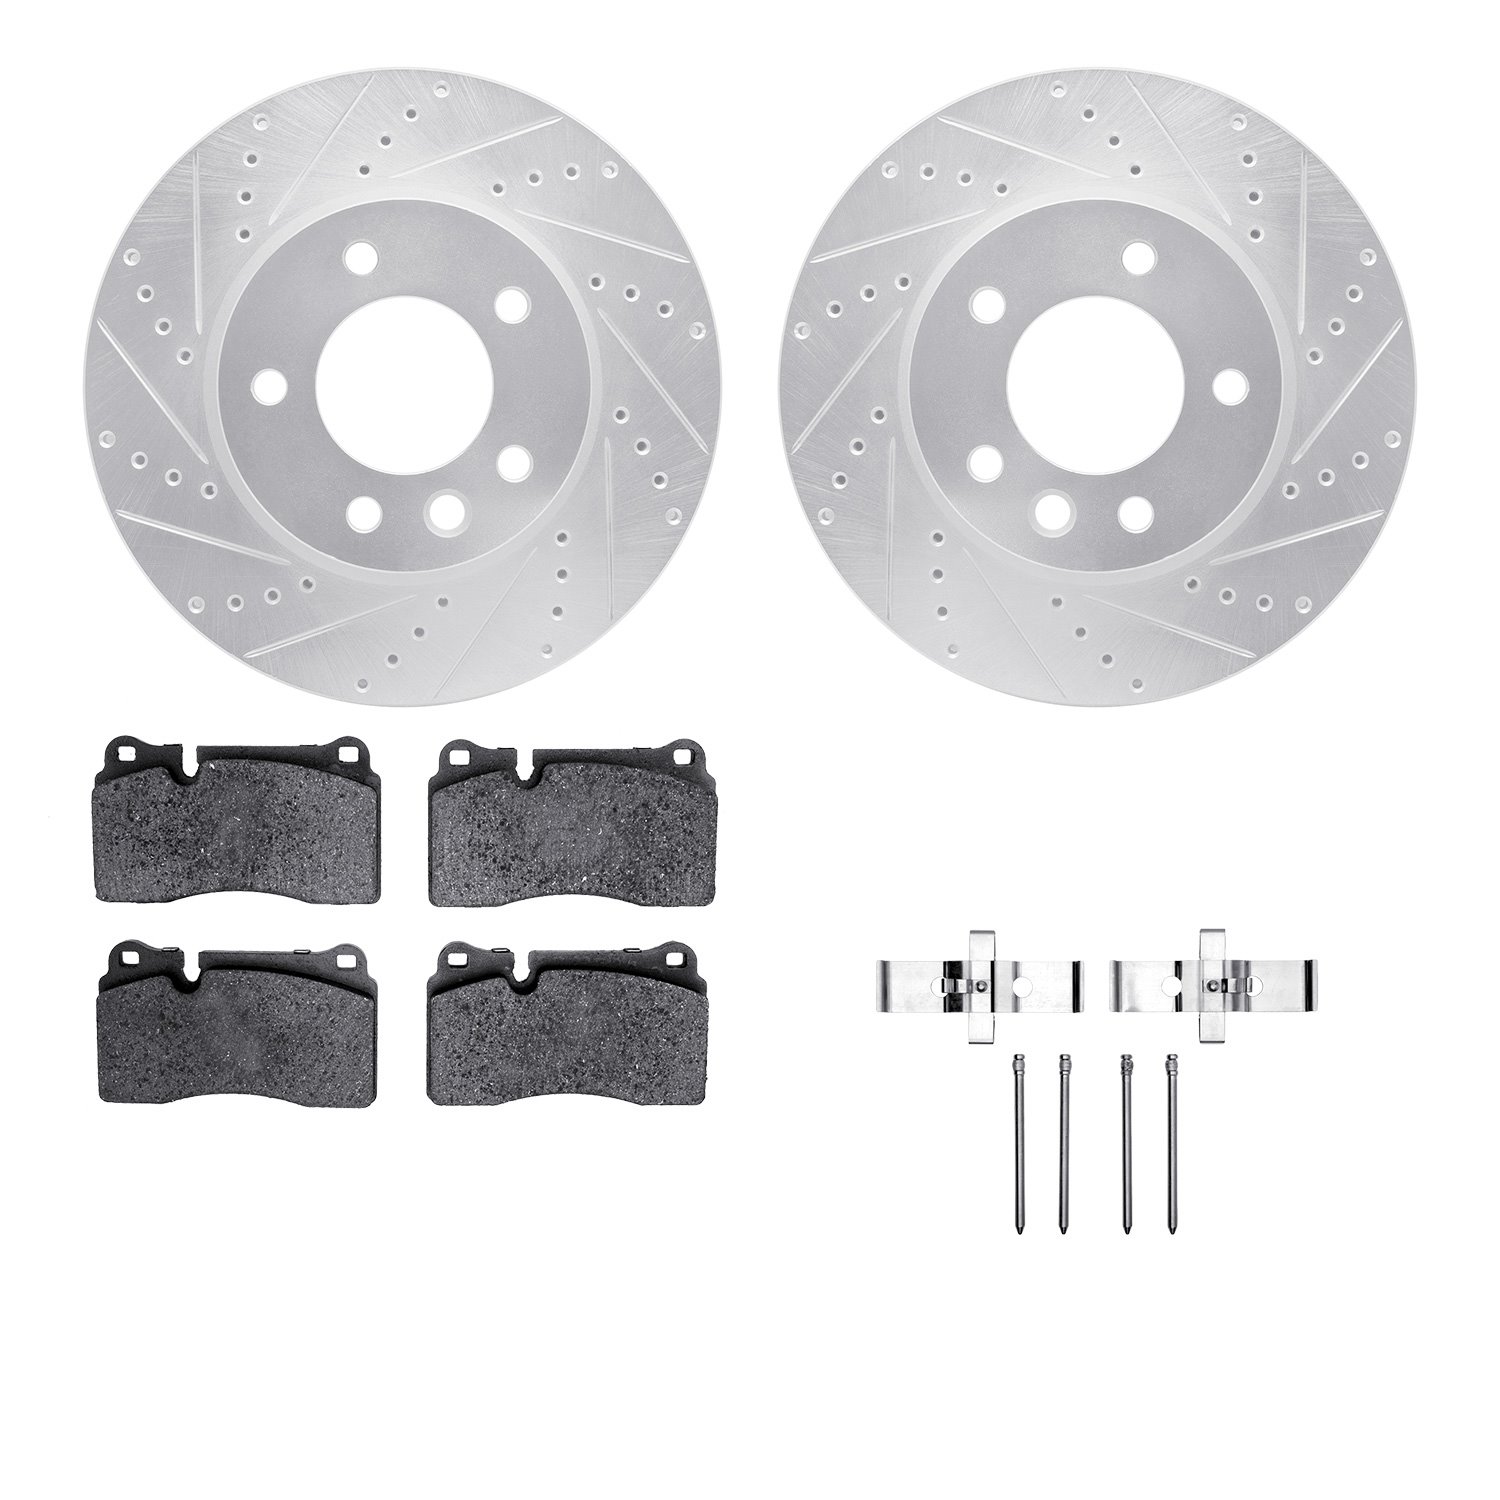 7612-74049 Drilled/Slotted Brake Rotors w/5000 Euro Ceramic Brake Pads Kit & Hardware [Silver], 2006-2018 Audi/Volkswagen, Posit